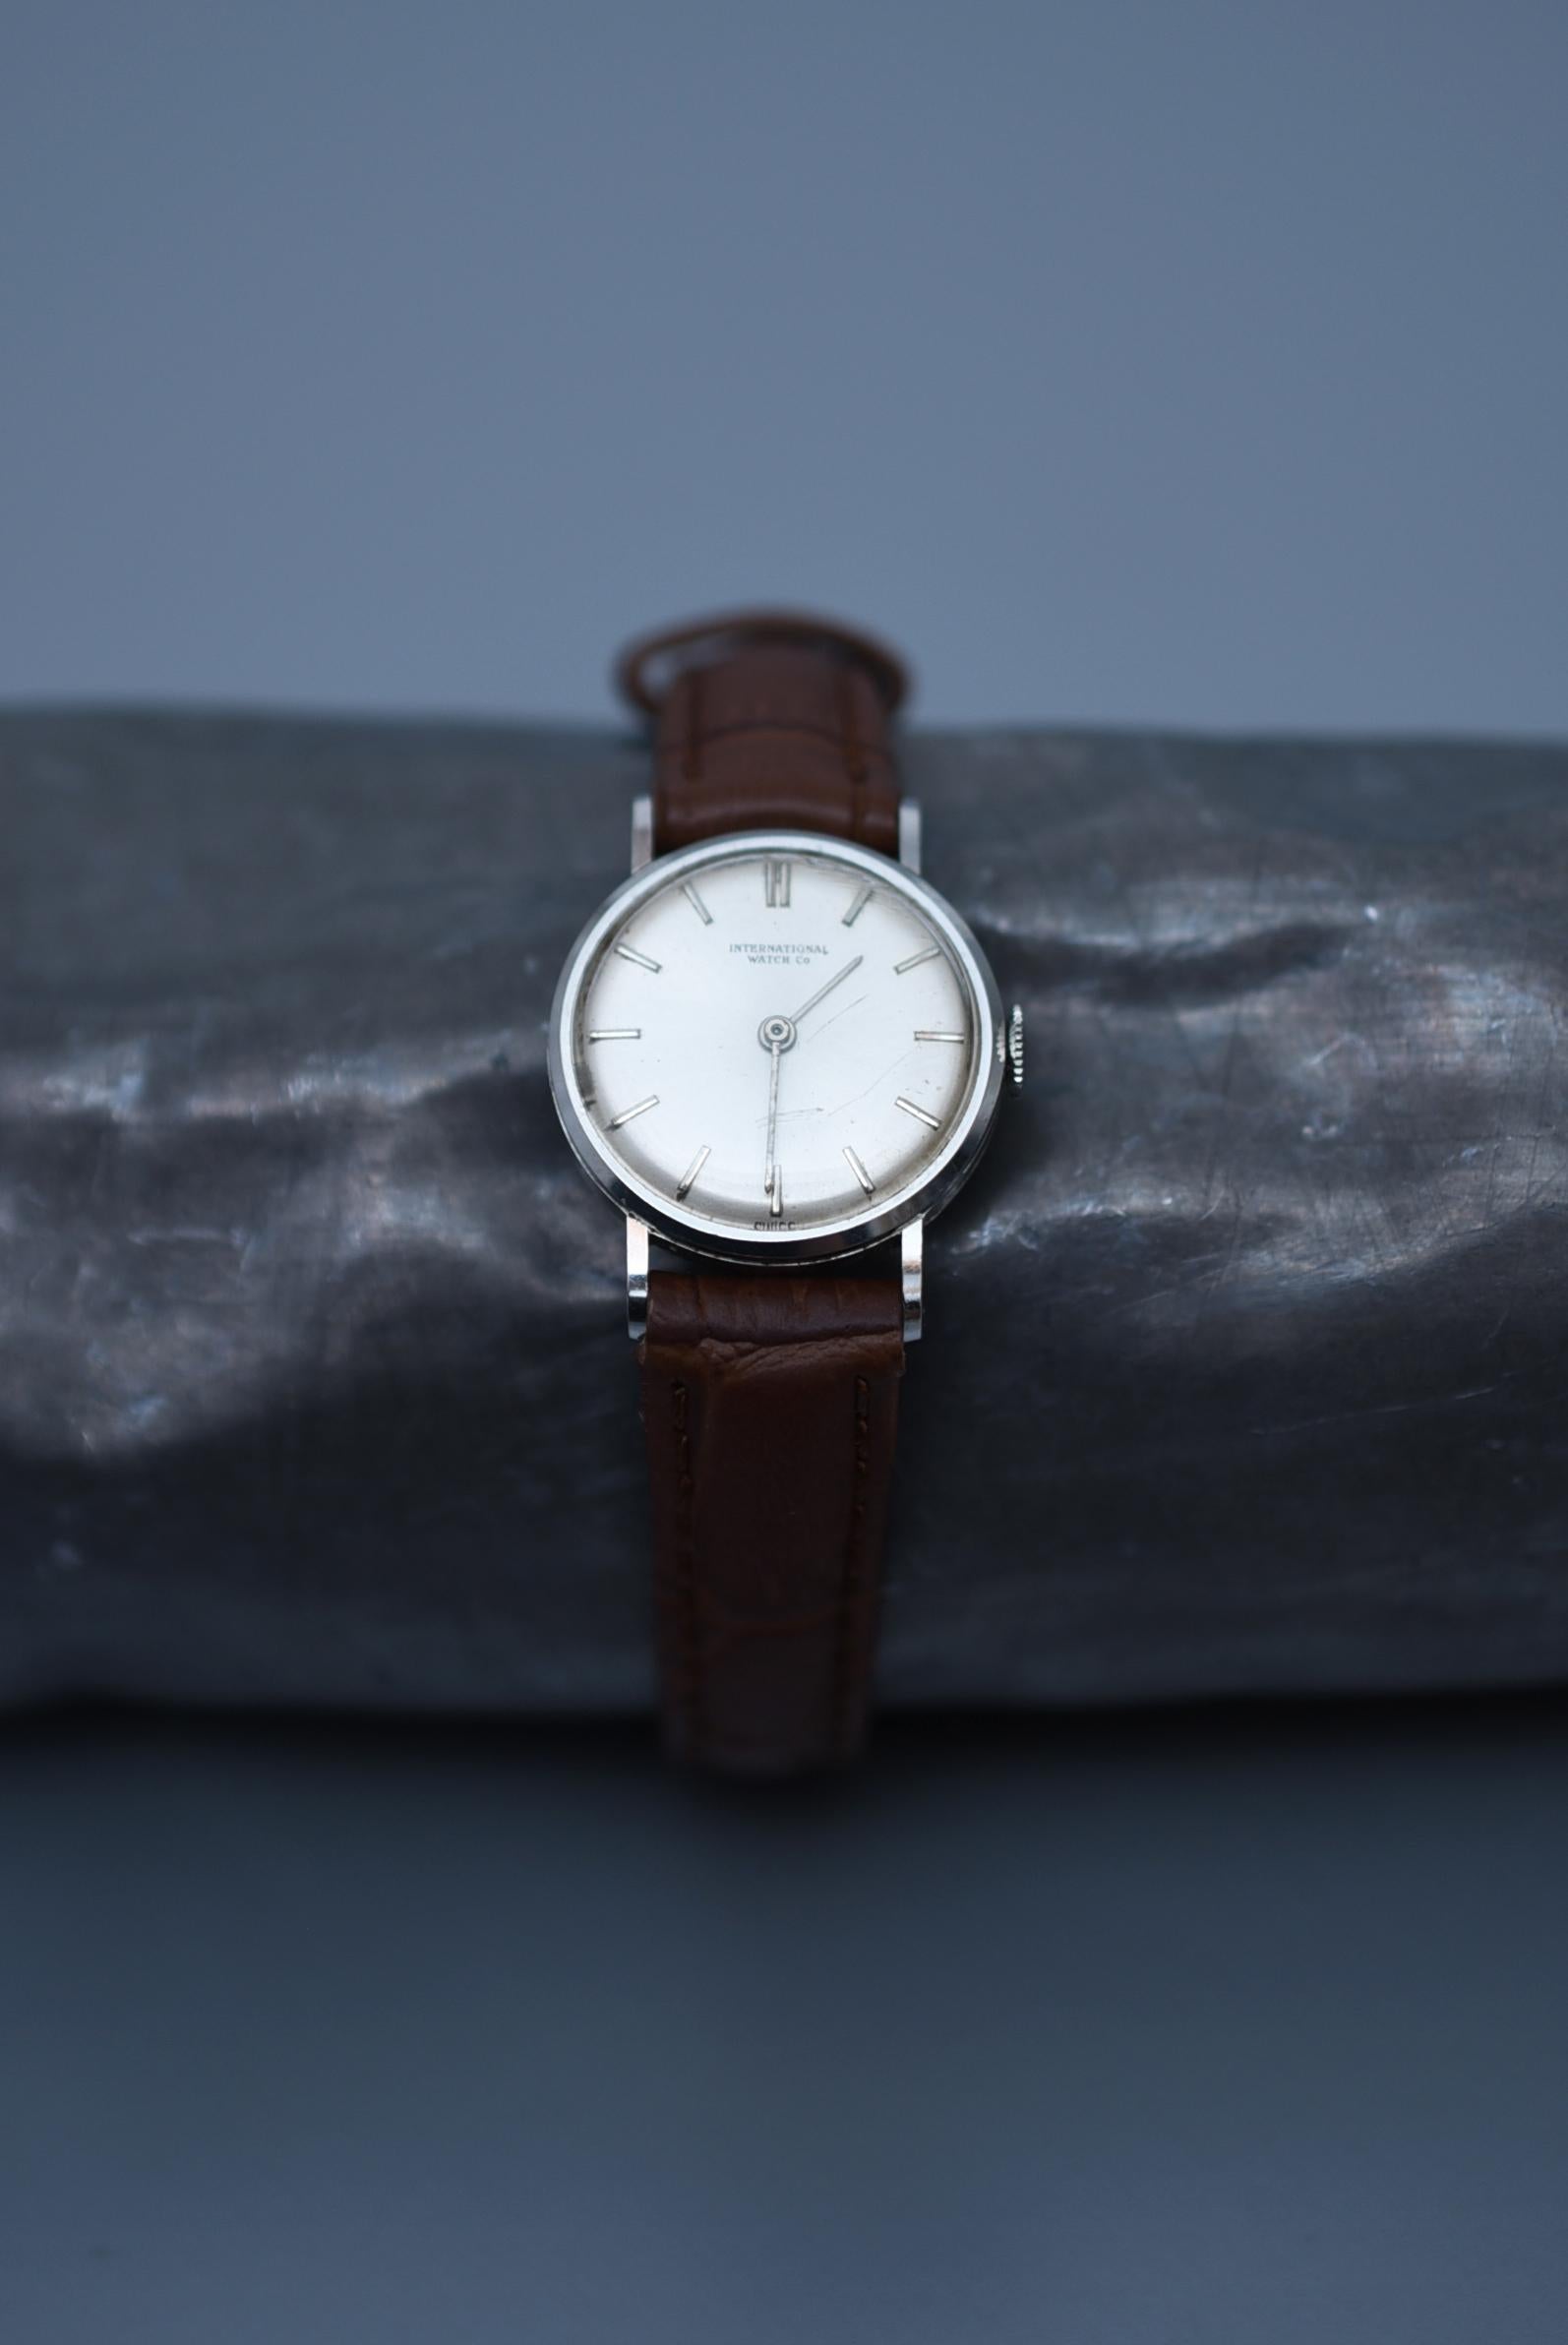 IWC 1970er Jahre Vintage-Uhren Damen
Größe: Gehäuse 20mm
Armumfang : 14cm zwischen 17cm

Uhrwerk : Handaufzug 

Diese Uhr von IWC (International Watch Company) wurde 1868 in der Schweiz gegründet und ist als alteingesessener Uhrenhersteller mit